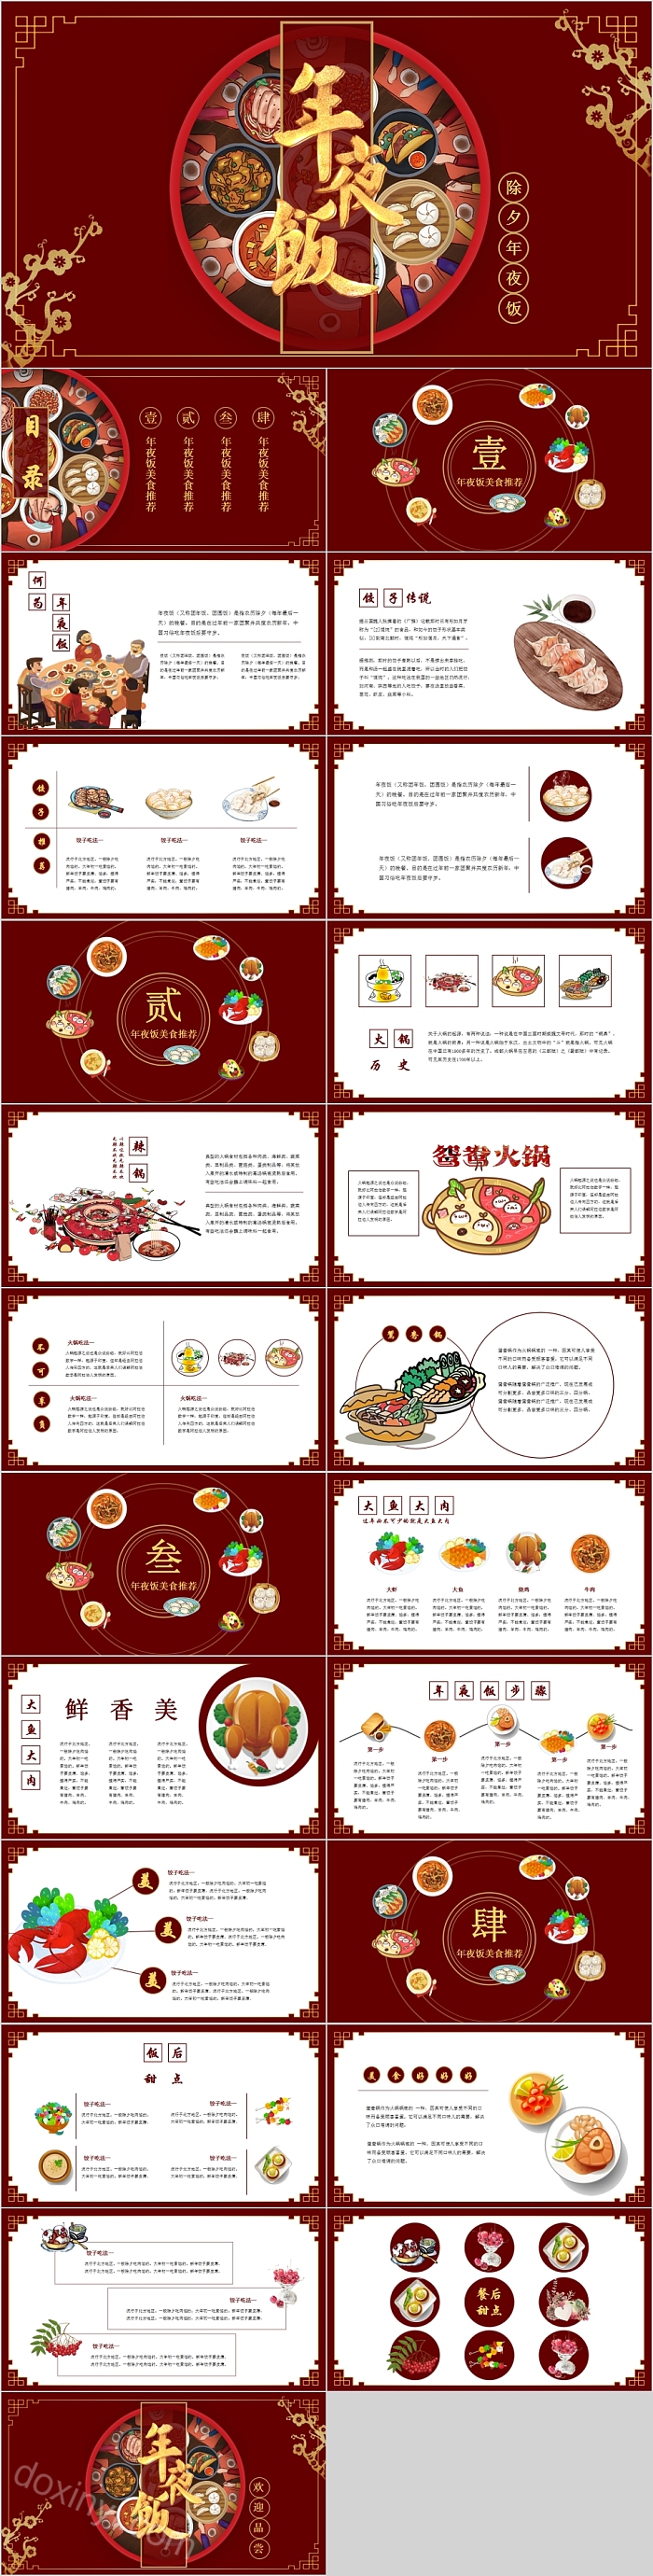 红色创意除夕春节习俗传统文化介绍除夕年夜饭PPT模板